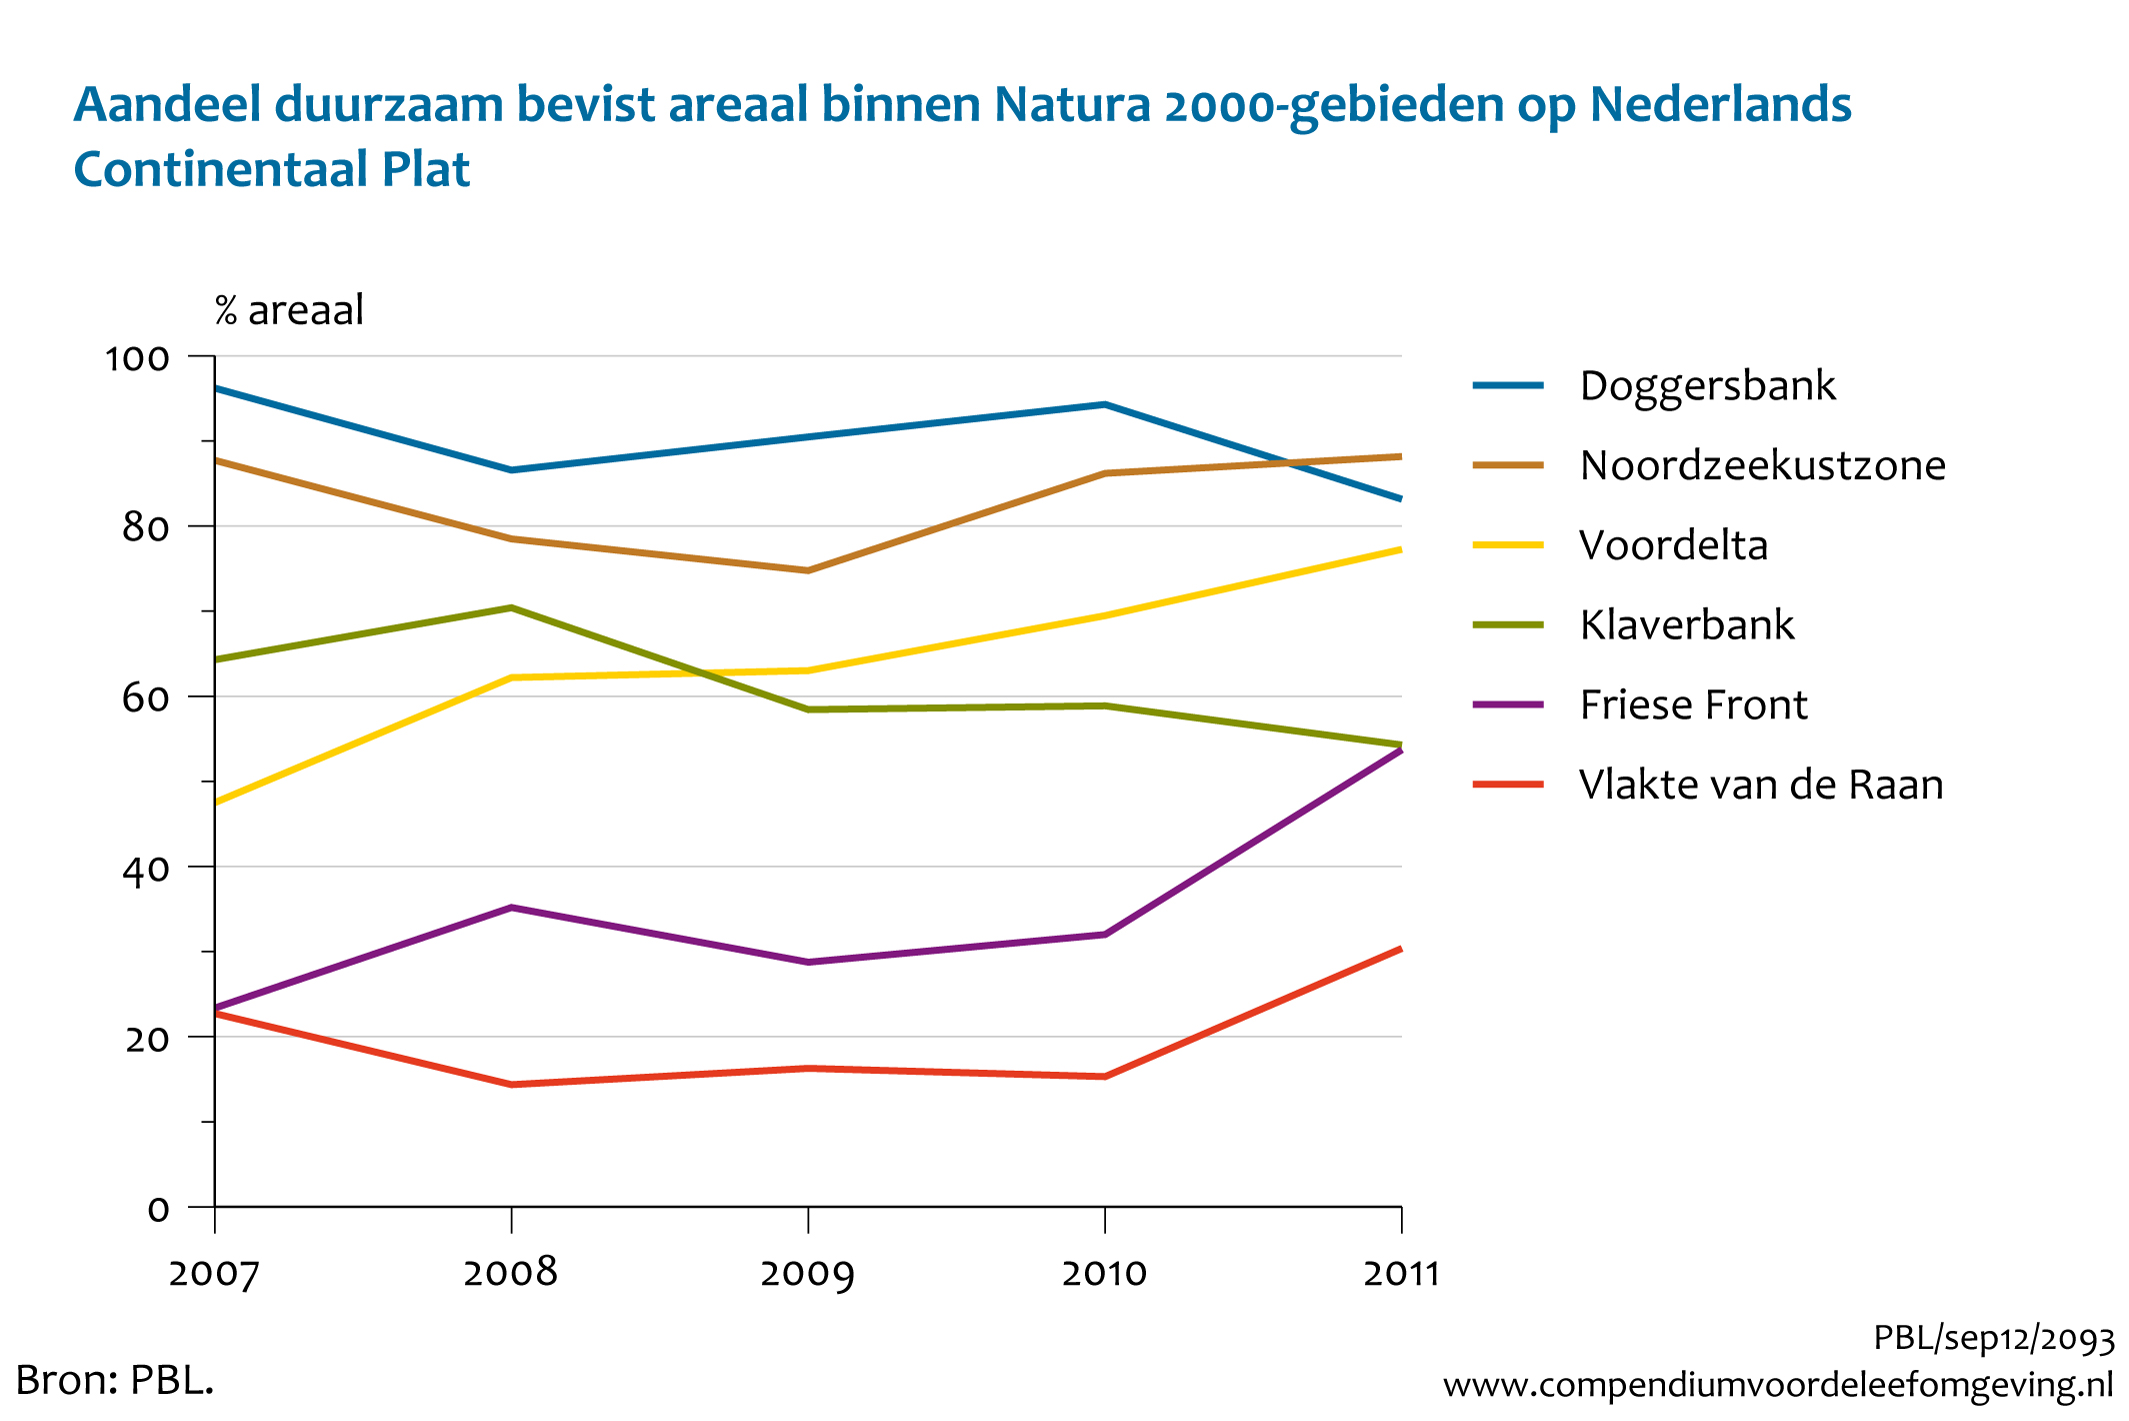 Figuur Aandeel duurzaam bevist areaal binnen Natura2000-gebieden op Nederlands Continentaal plat, 2007-2011. In de rest van de tekst wordt deze figuur uitgebreider uitgelegd.